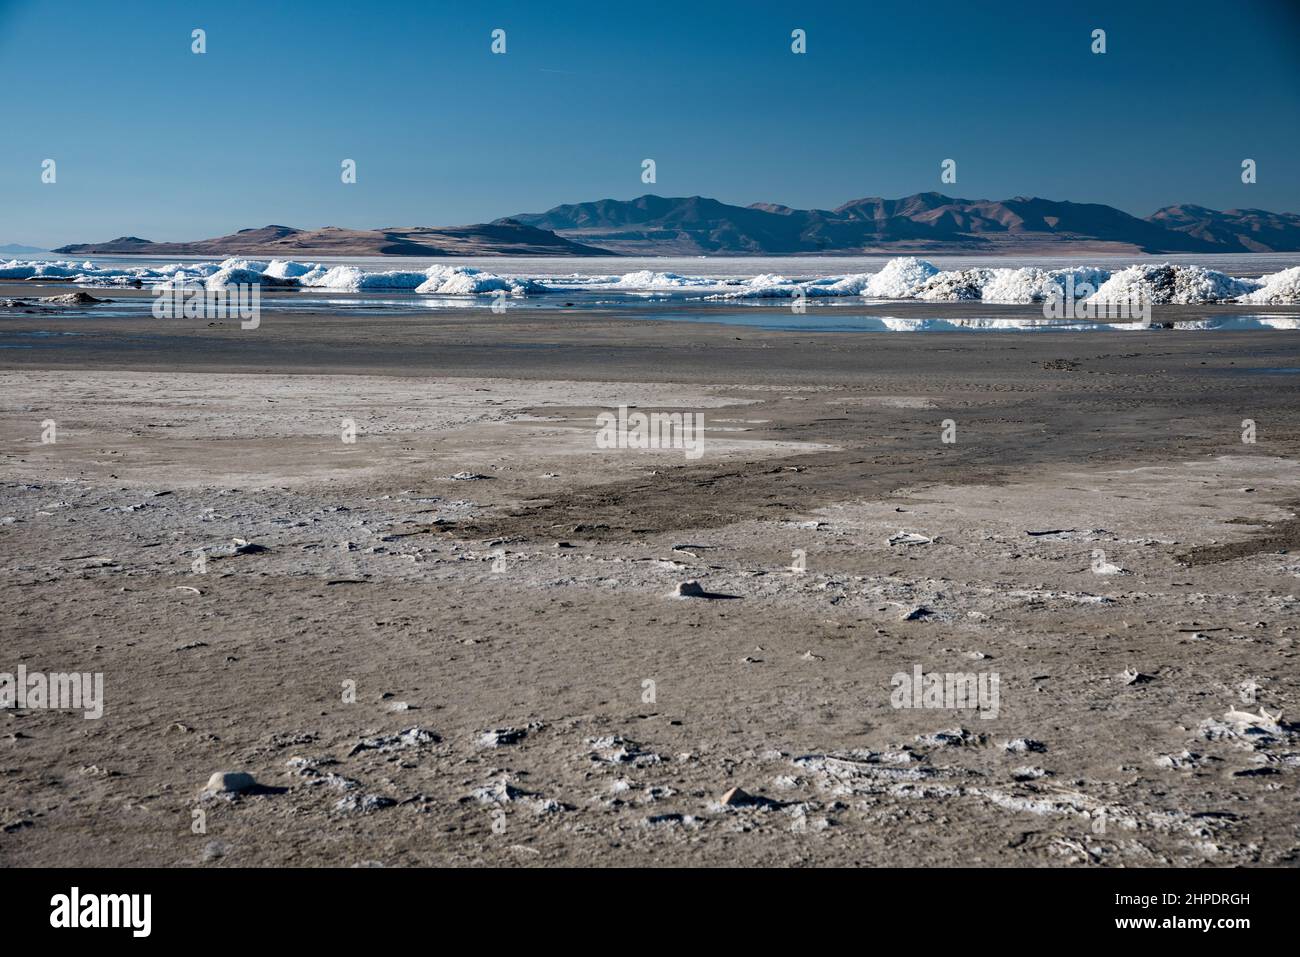 Il grande lago di sale che svanisce con tumuli di sale a breve distanza. La siccità e le pratiche di irrigazione povere stanno accelerando l'evaporazione. Foto Stock